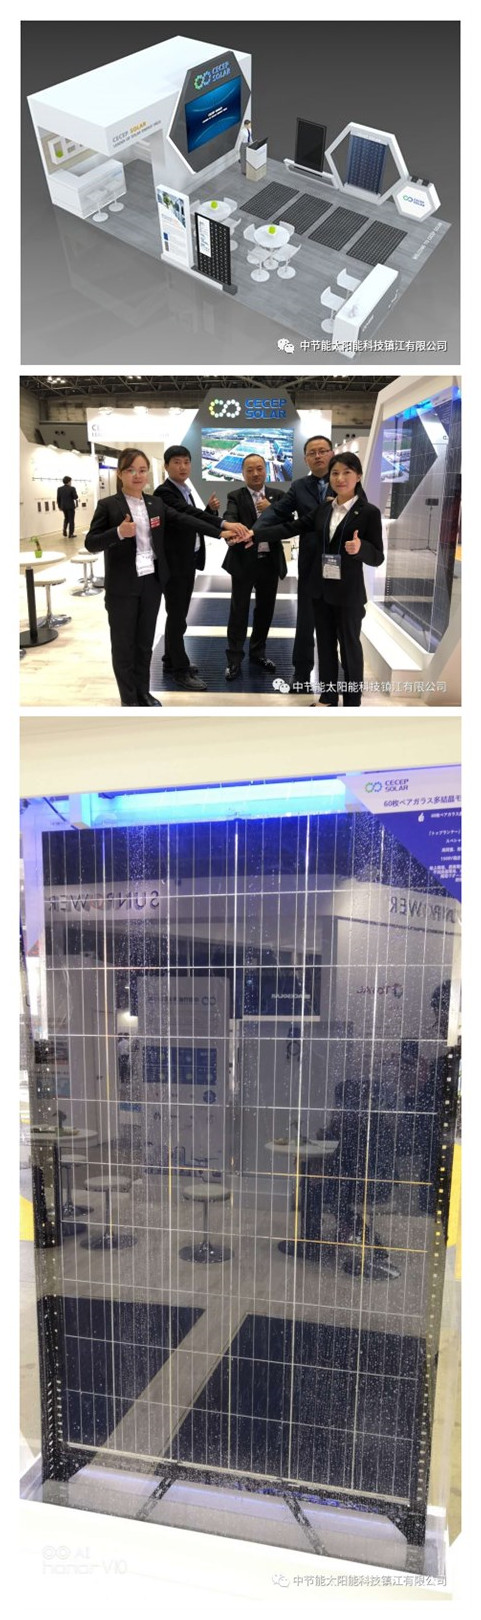 展覧会の現場レポート丨中節能は2018年日本国際太陽光発電展覧会に登場